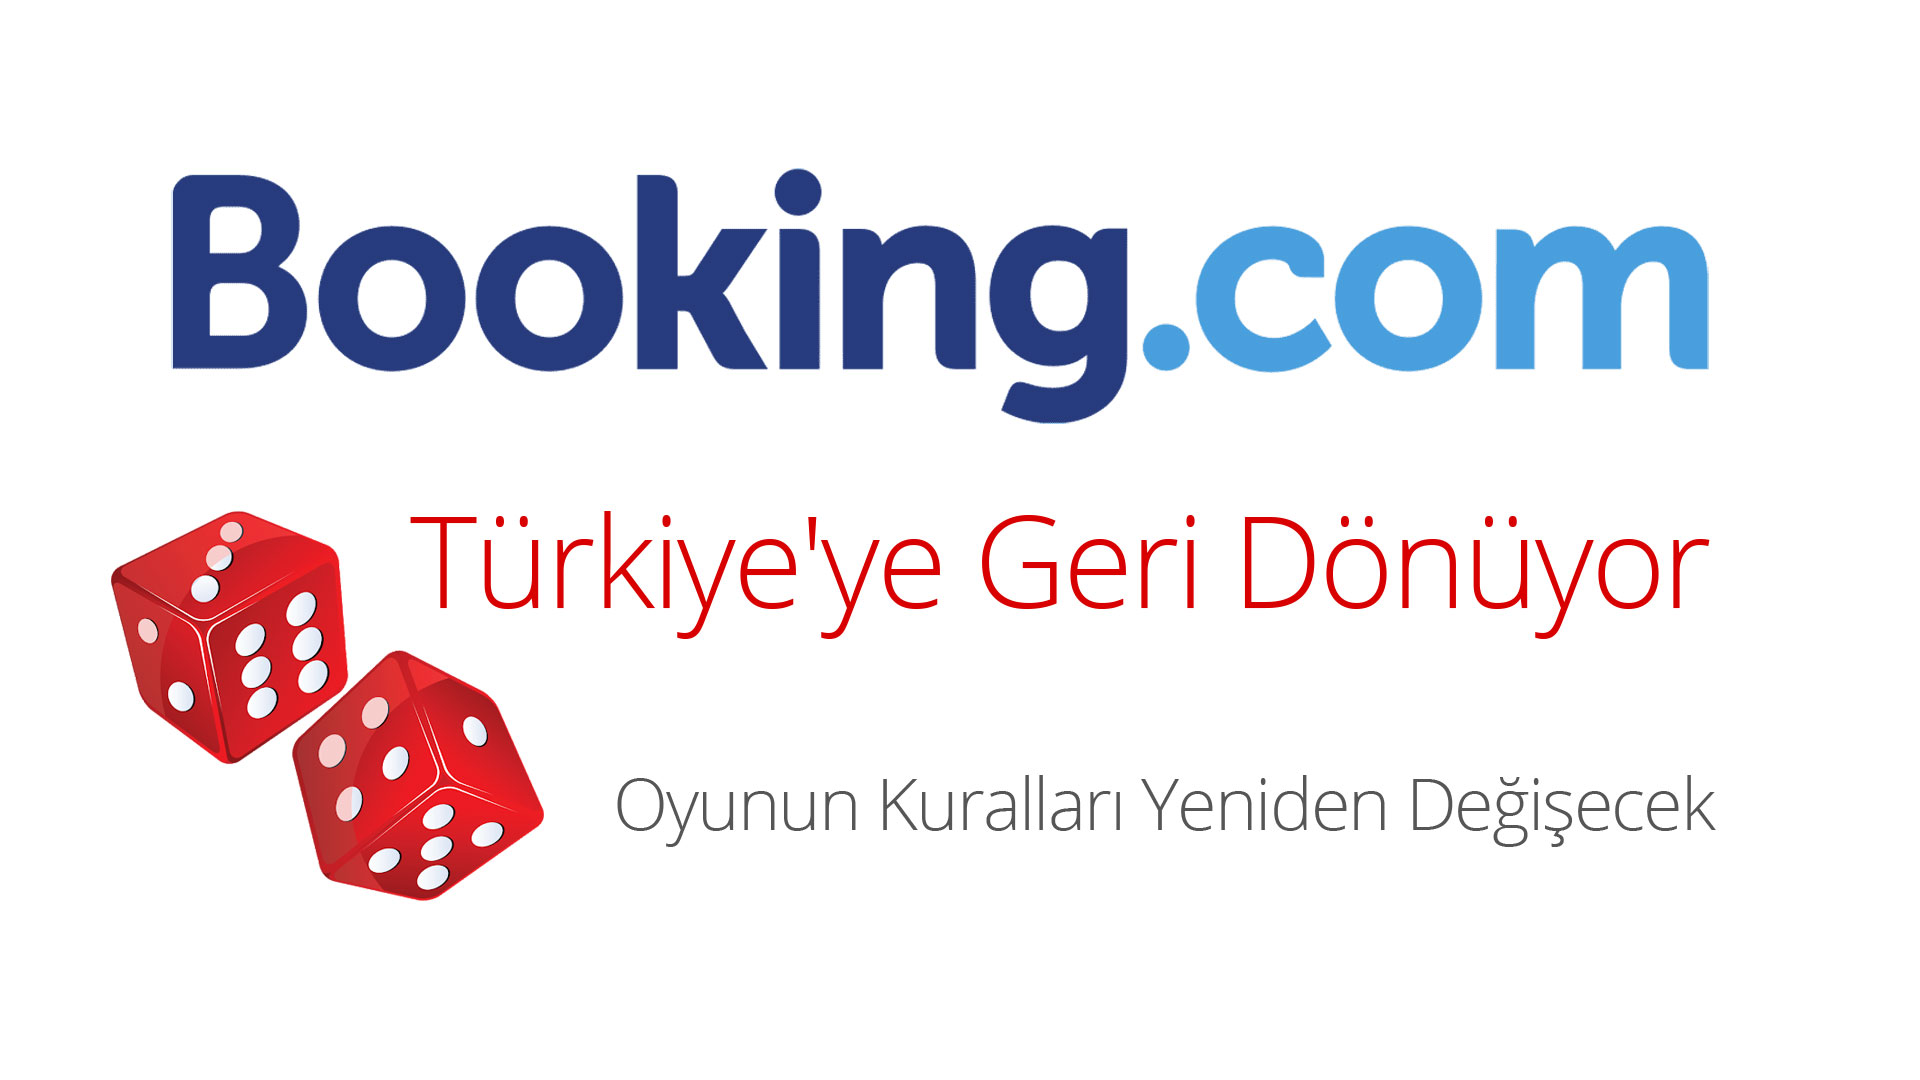 Booking.com Türkiye'ye Geri Dönüyor